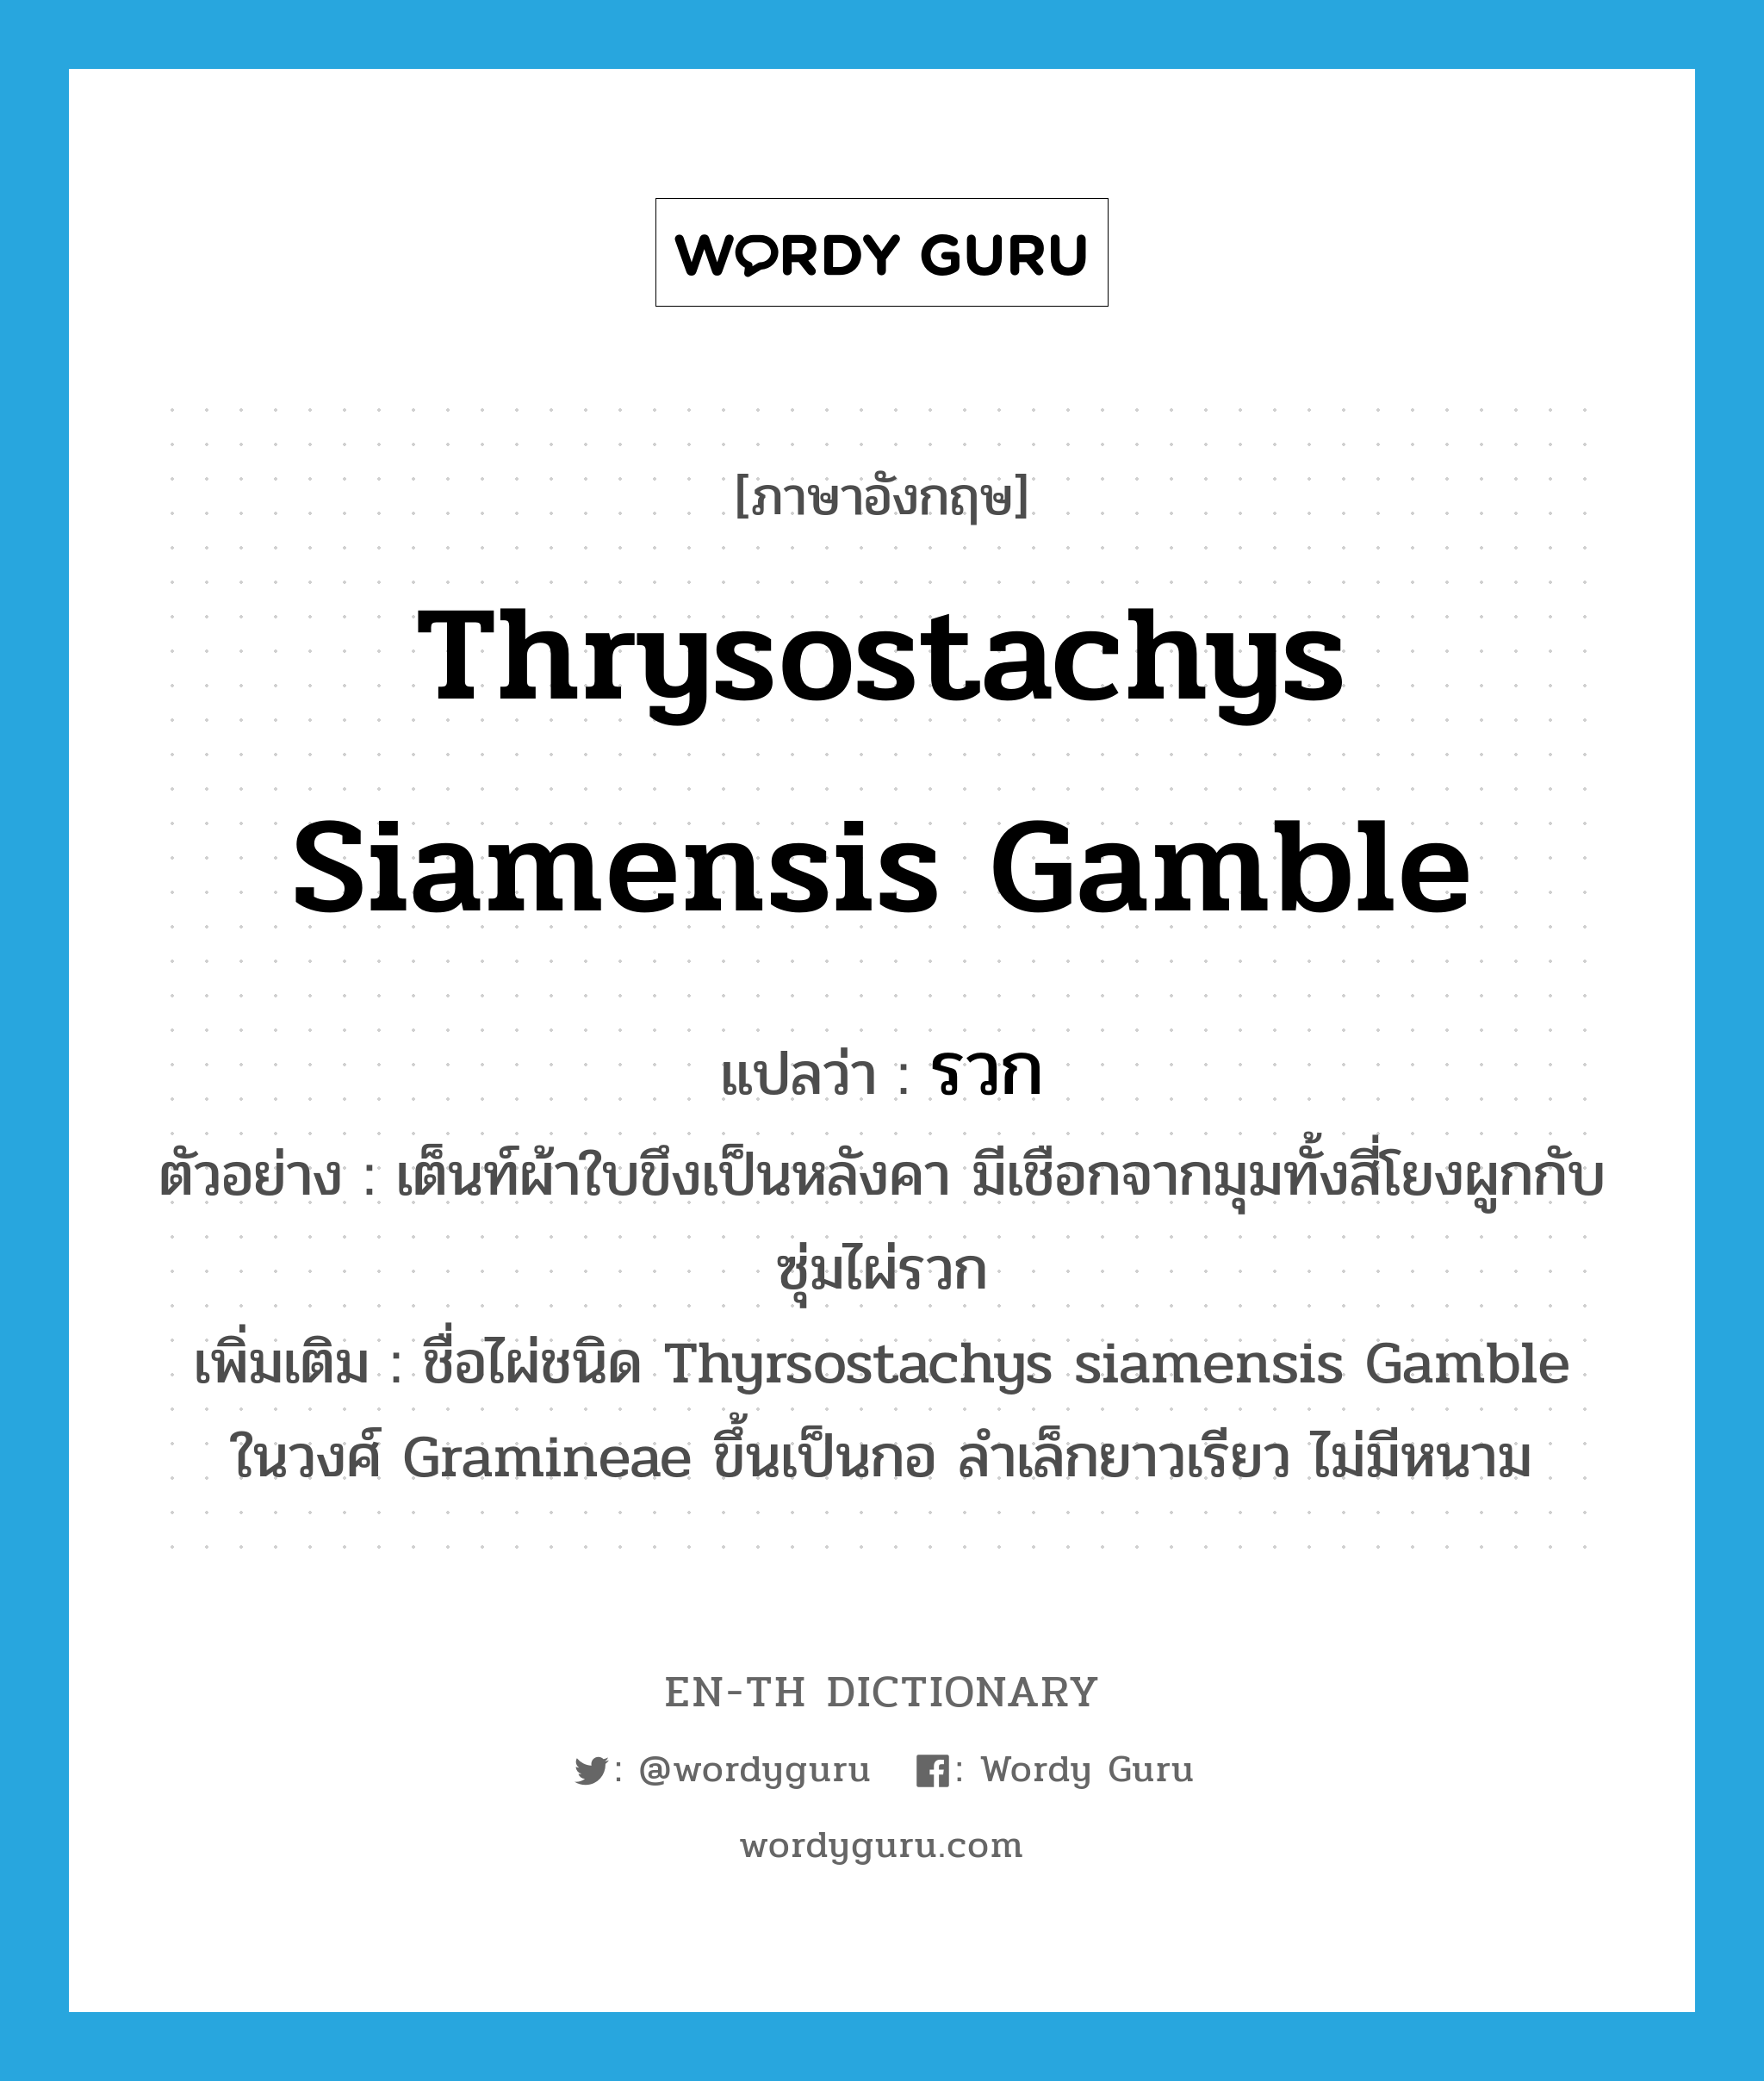 Thrysostachys siamensis Gamble แปลว่า?, คำศัพท์ภาษาอังกฤษ Thrysostachys siamensis Gamble แปลว่า รวก ประเภท N ตัวอย่าง เต็นท์ผ้าใบขึงเป็นหลังคา มีเชือกจากมุมทั้งสี่โยงผูกกับซุ่มไผ่รวก เพิ่มเติม ชื่อไผ่ชนิด Thyrsostachys siamensis Gamble ในวงศ์ Gramineae ขึ้นเป็นกอ ลำเล็กยาวเรียว ไม่มีหนาม หมวด N